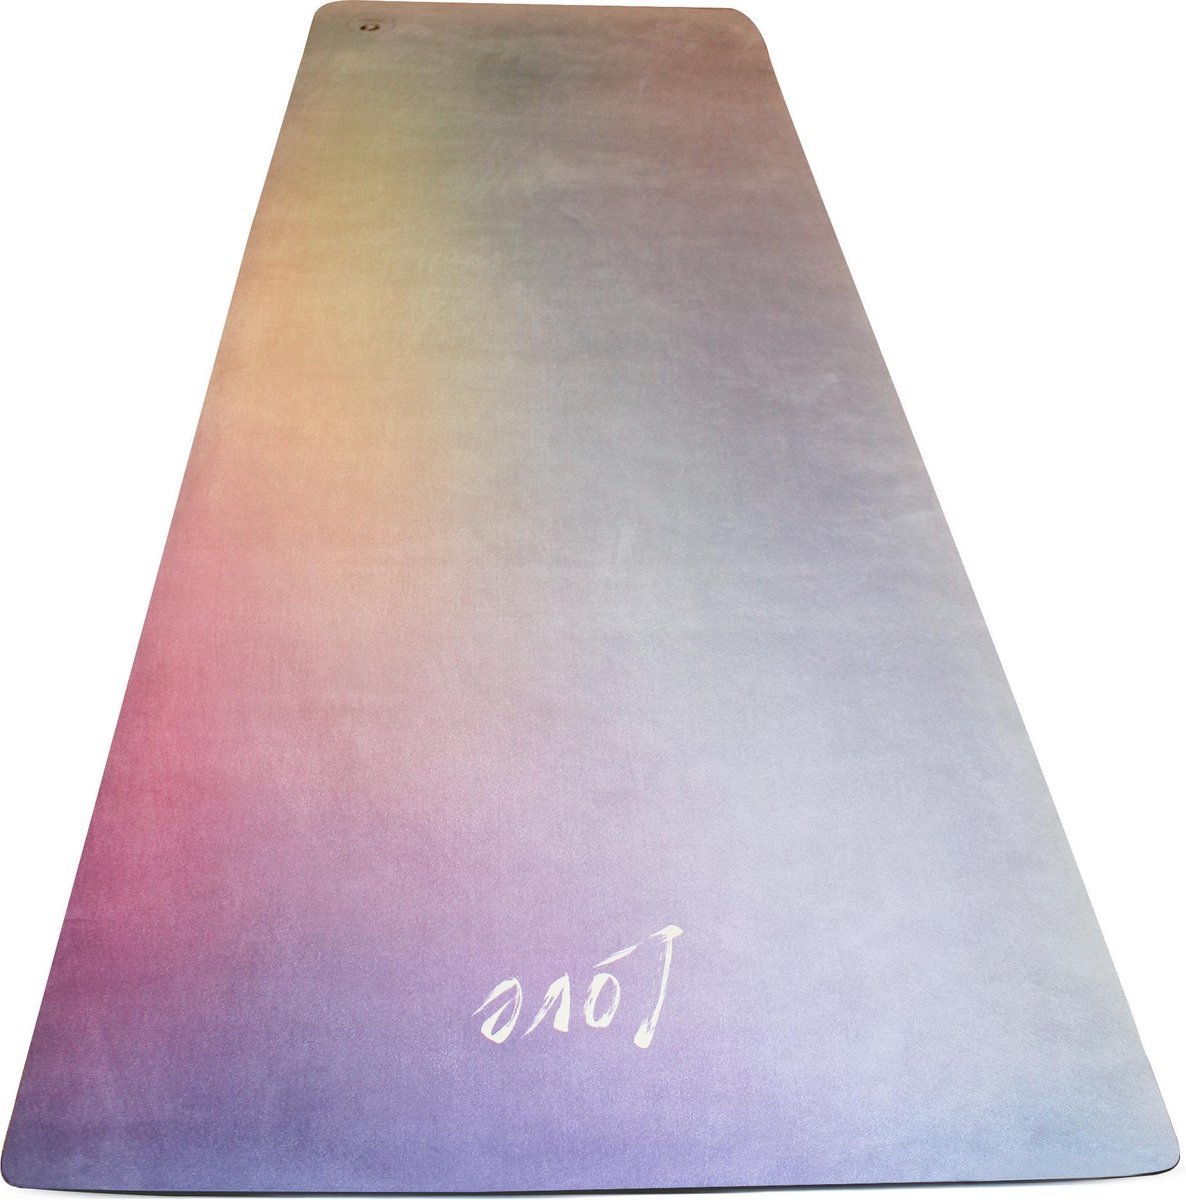 Travel yoga mat "Love" @studiofelicidade * Eco-friendly * Wasbaar * Lichtgewicht * Luxe zachte toplaag